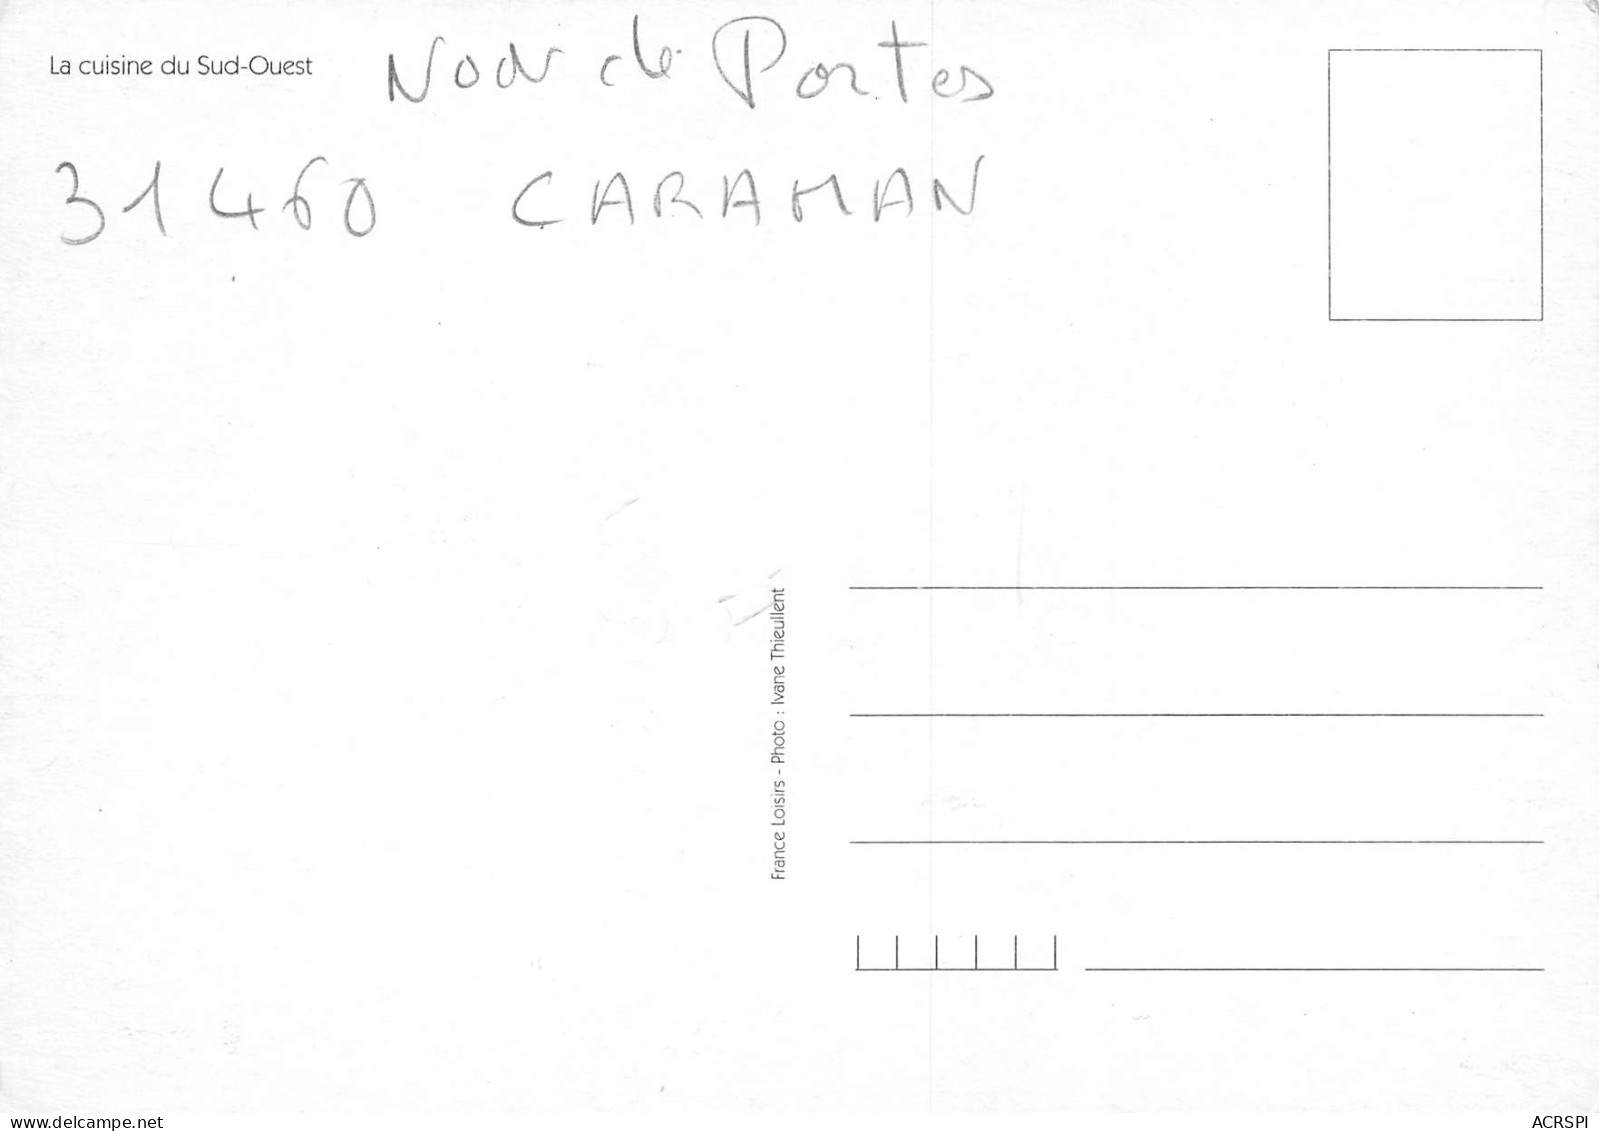 Recette Jambon Saucisson COLVERT NON DE PORTES 31460 CARAMAN  N° 78 \MK3029 - Recettes (cuisine)